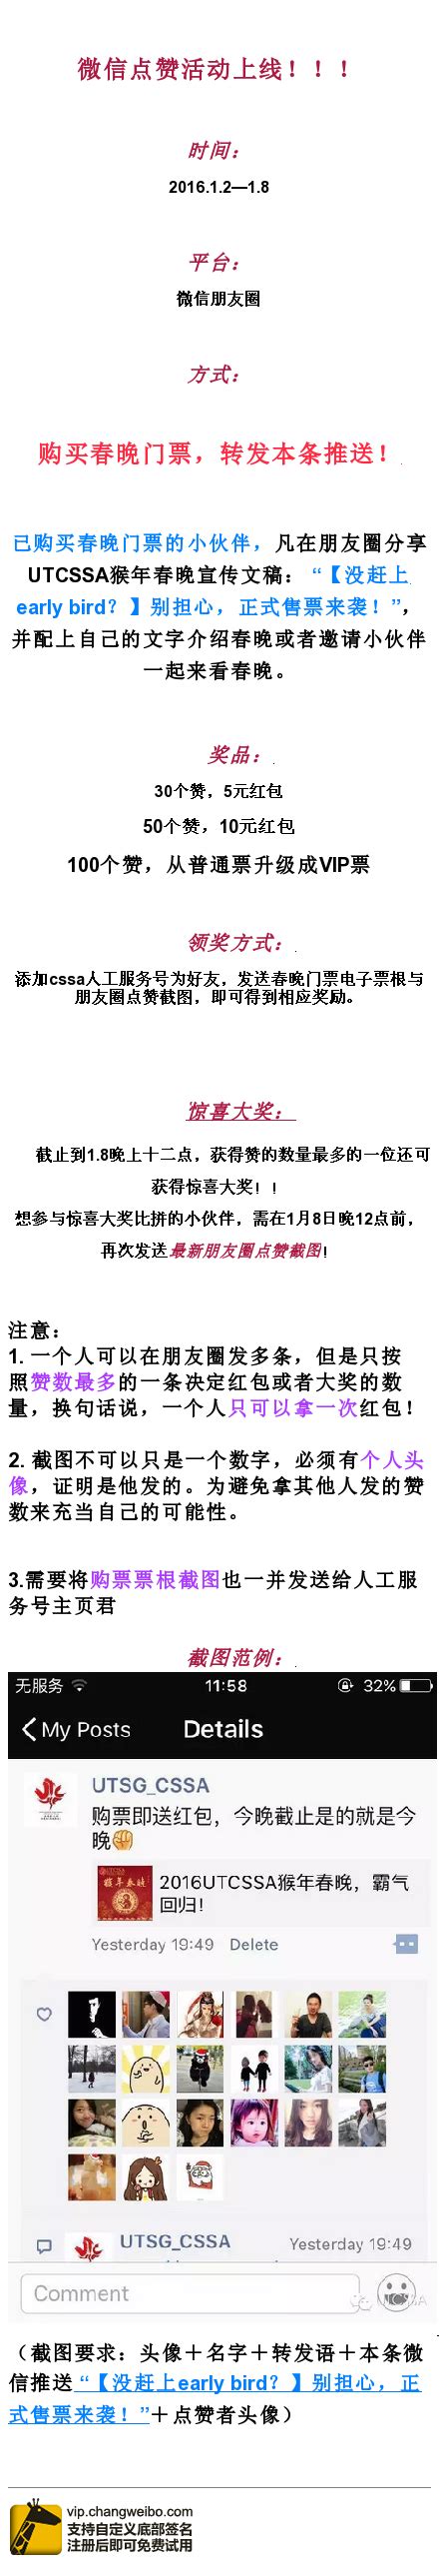 长微博_changweibo.com_长微博工具_长微博生成器_长颈鹿长微博 | Inbox screenshot